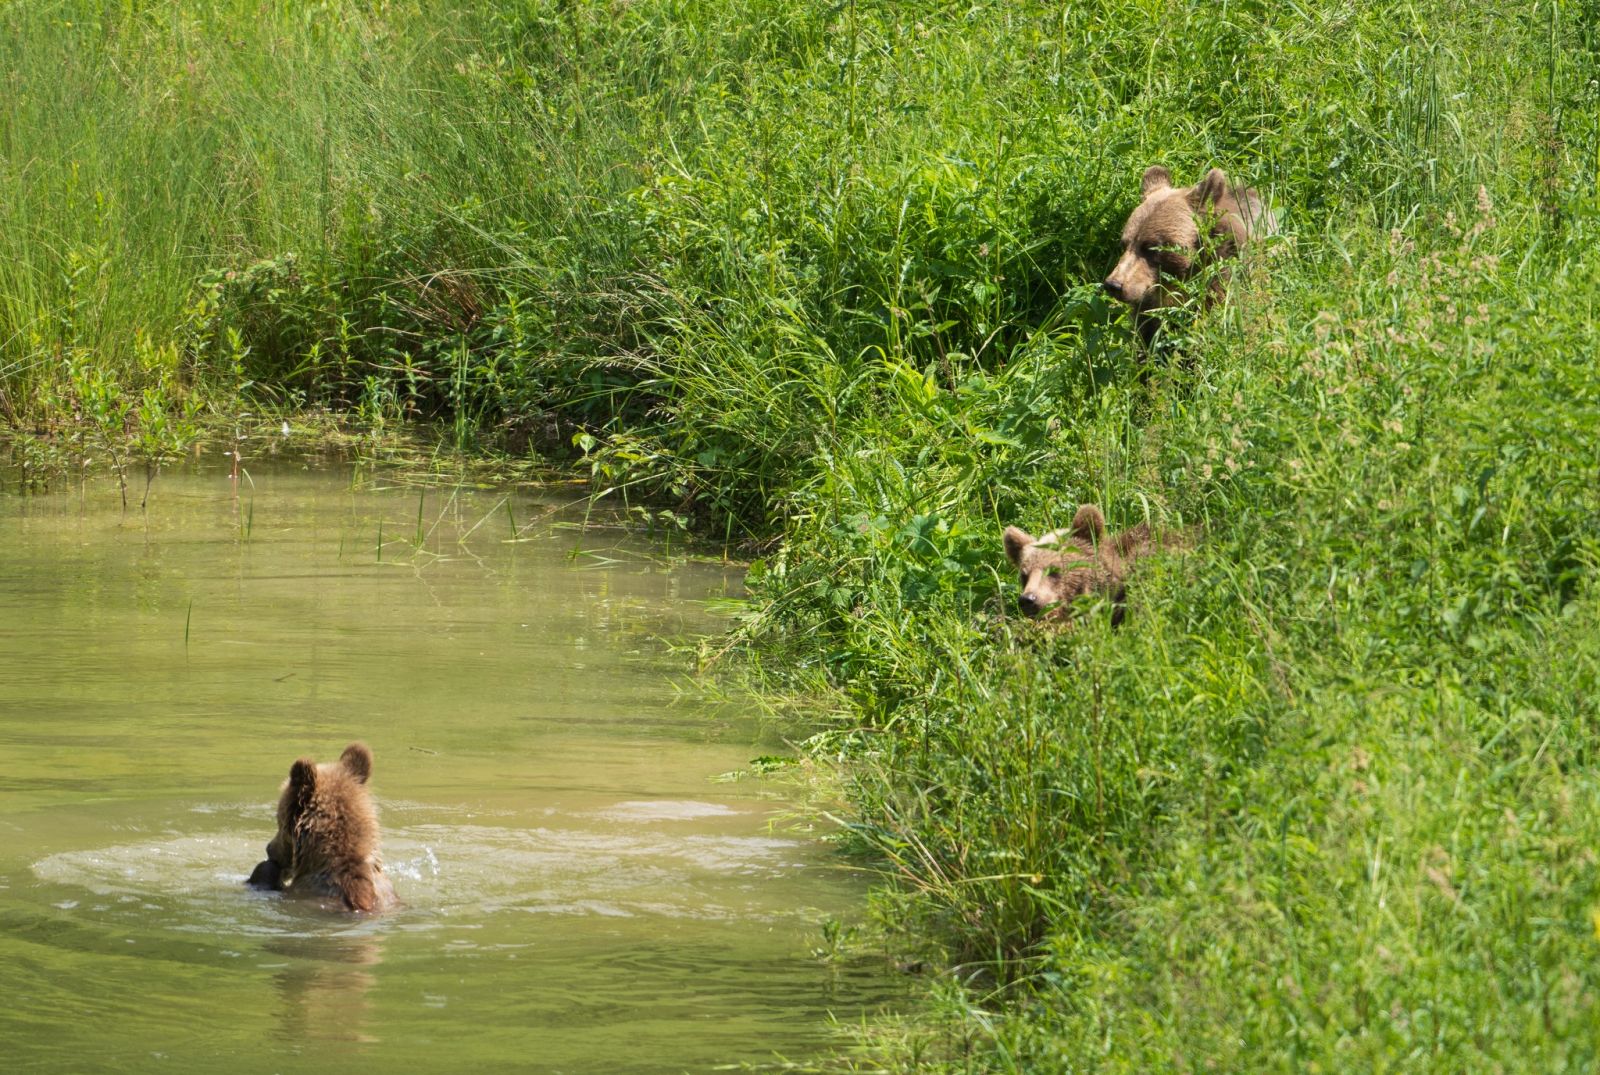 Foto: Medvedí wellness. Fotograf zachytil úžasné zábery kúpajúcich sa medveďov v prírode na hornej Nitre